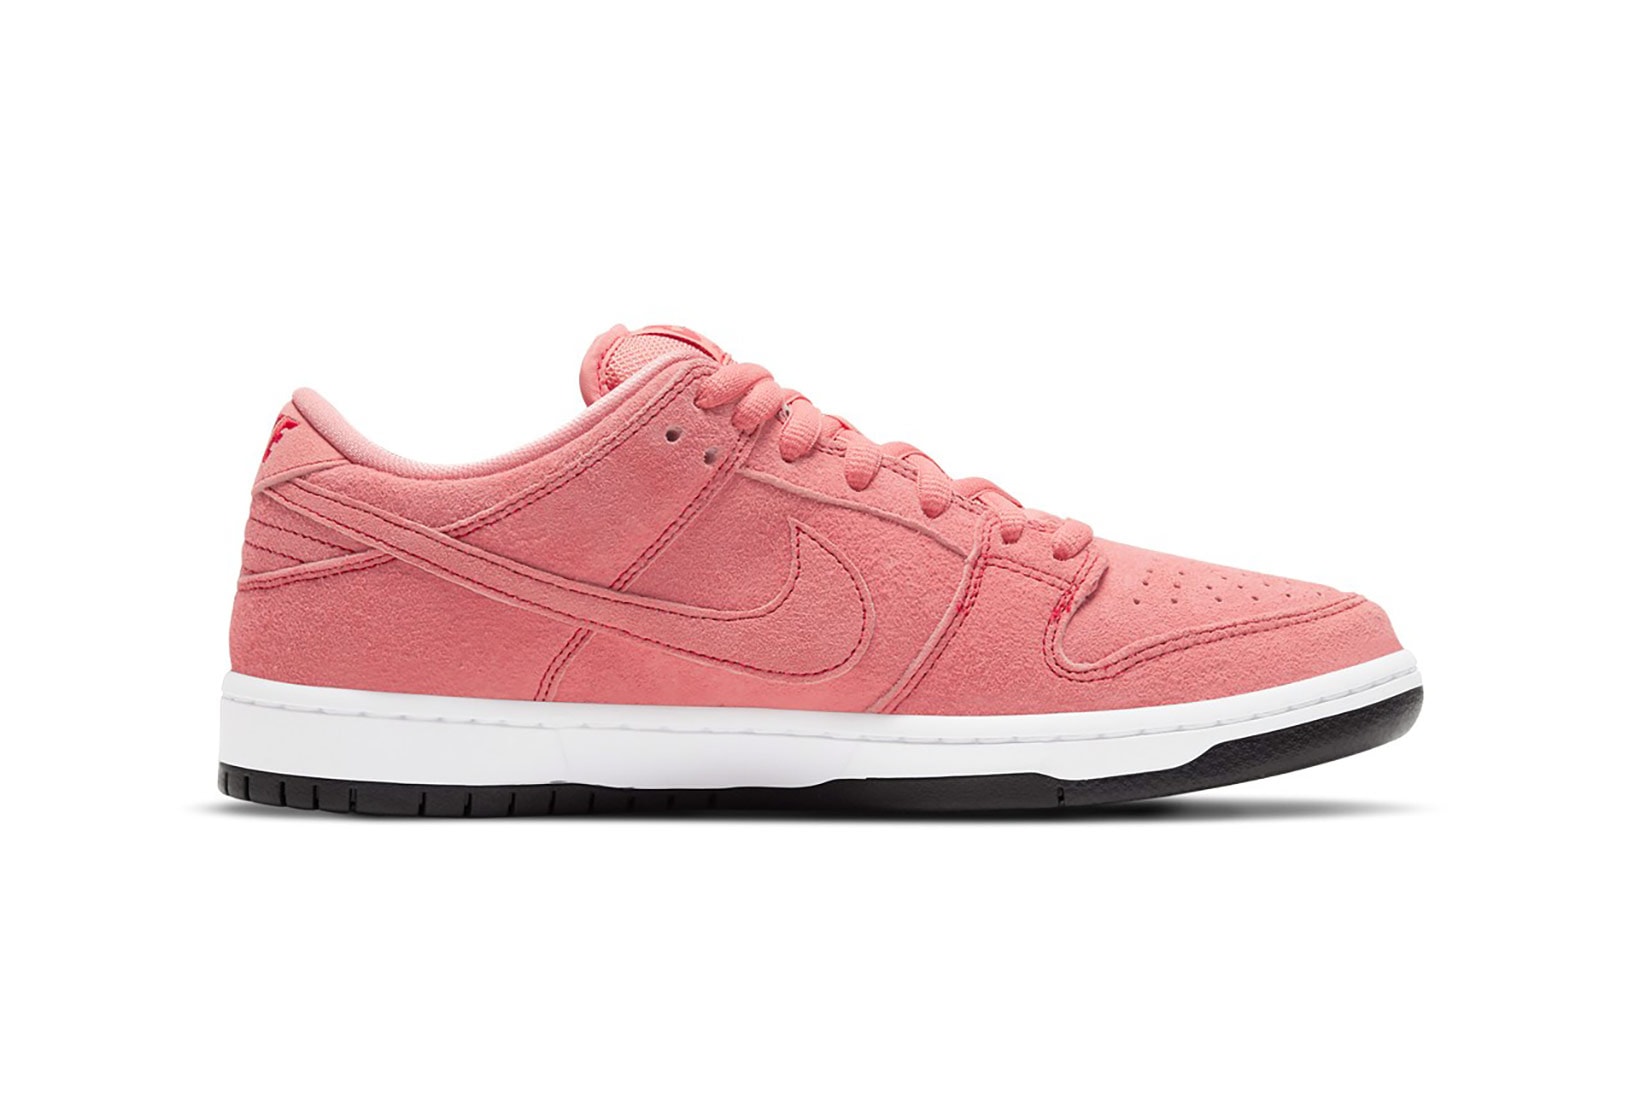 nike sb dunk low sneakers pink pig white black colorway sneakerhead footwear kicks shoes lateral